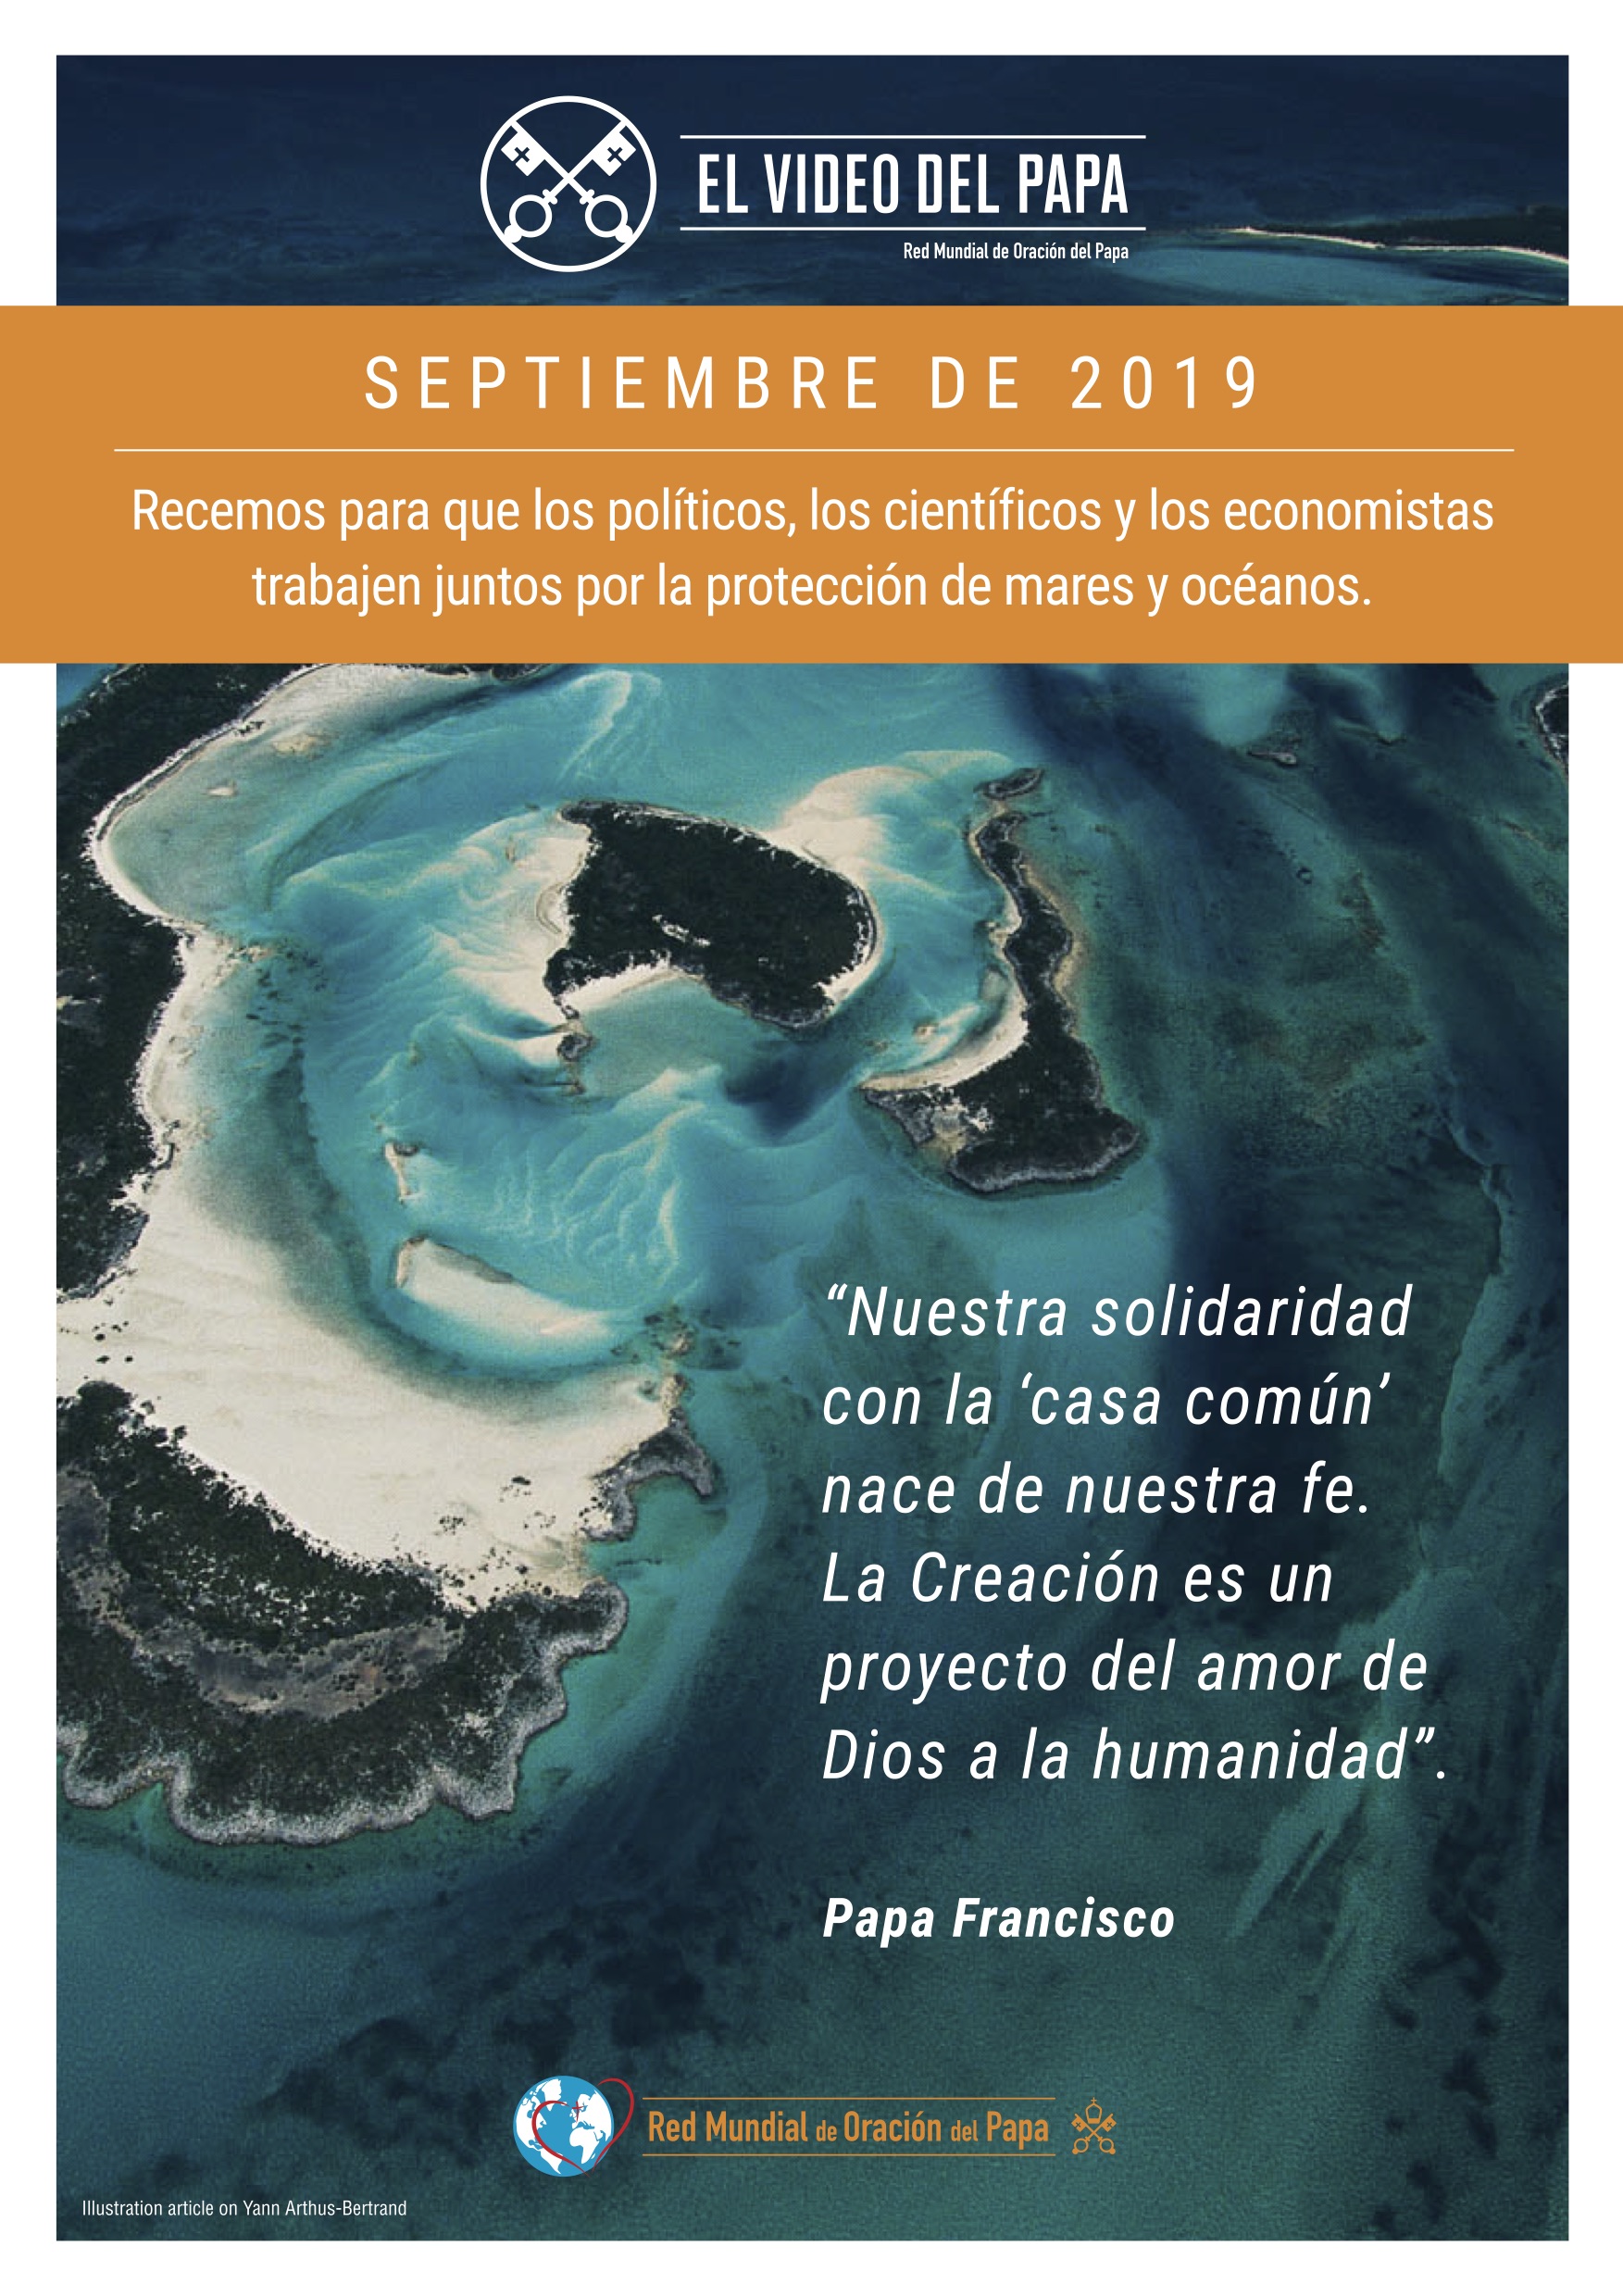 poster-color-tpv-9-2019-2-es-la-proteccion-de-los-oceanos.jpg